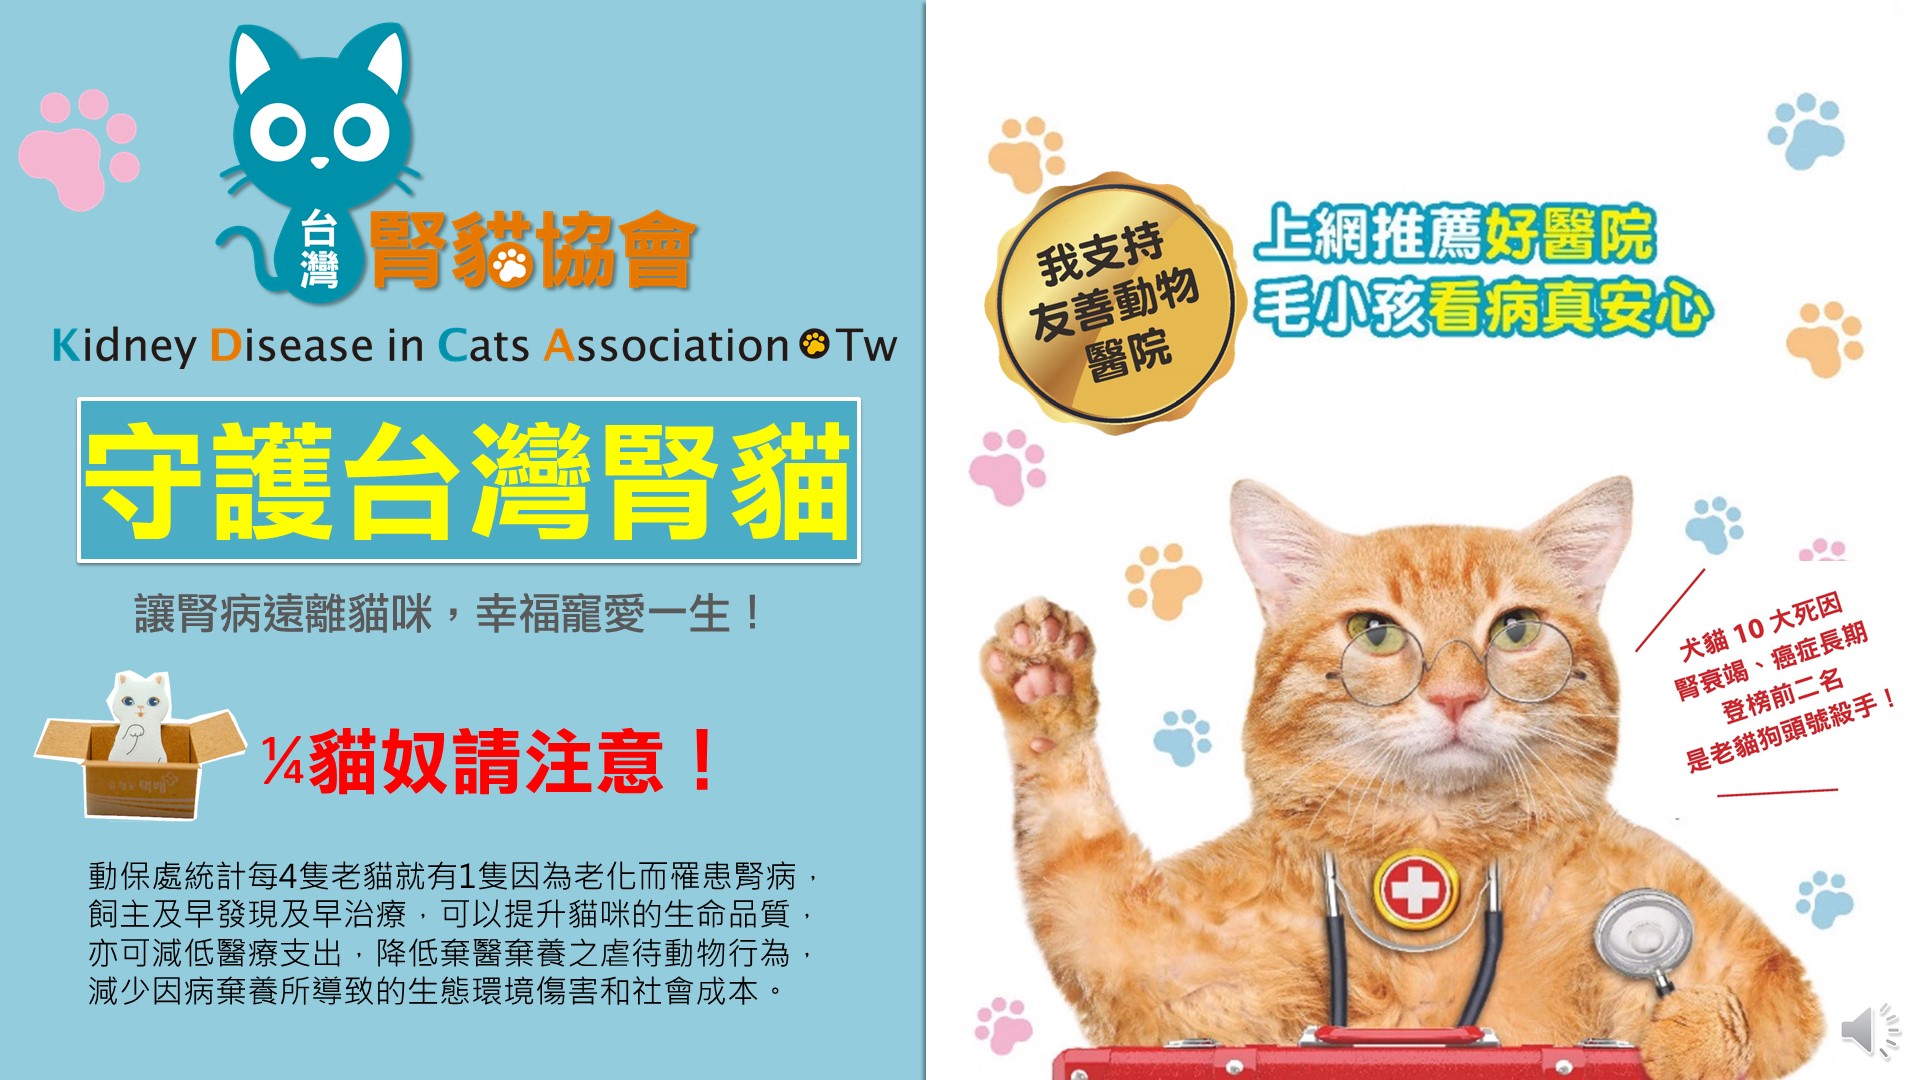 在 台 灣 每 四 隻 老 貓 就 有 一 隻 得 到 腎 病 ， 協 會 提 倡 友 善 動 物 醫 院 機 制 。 